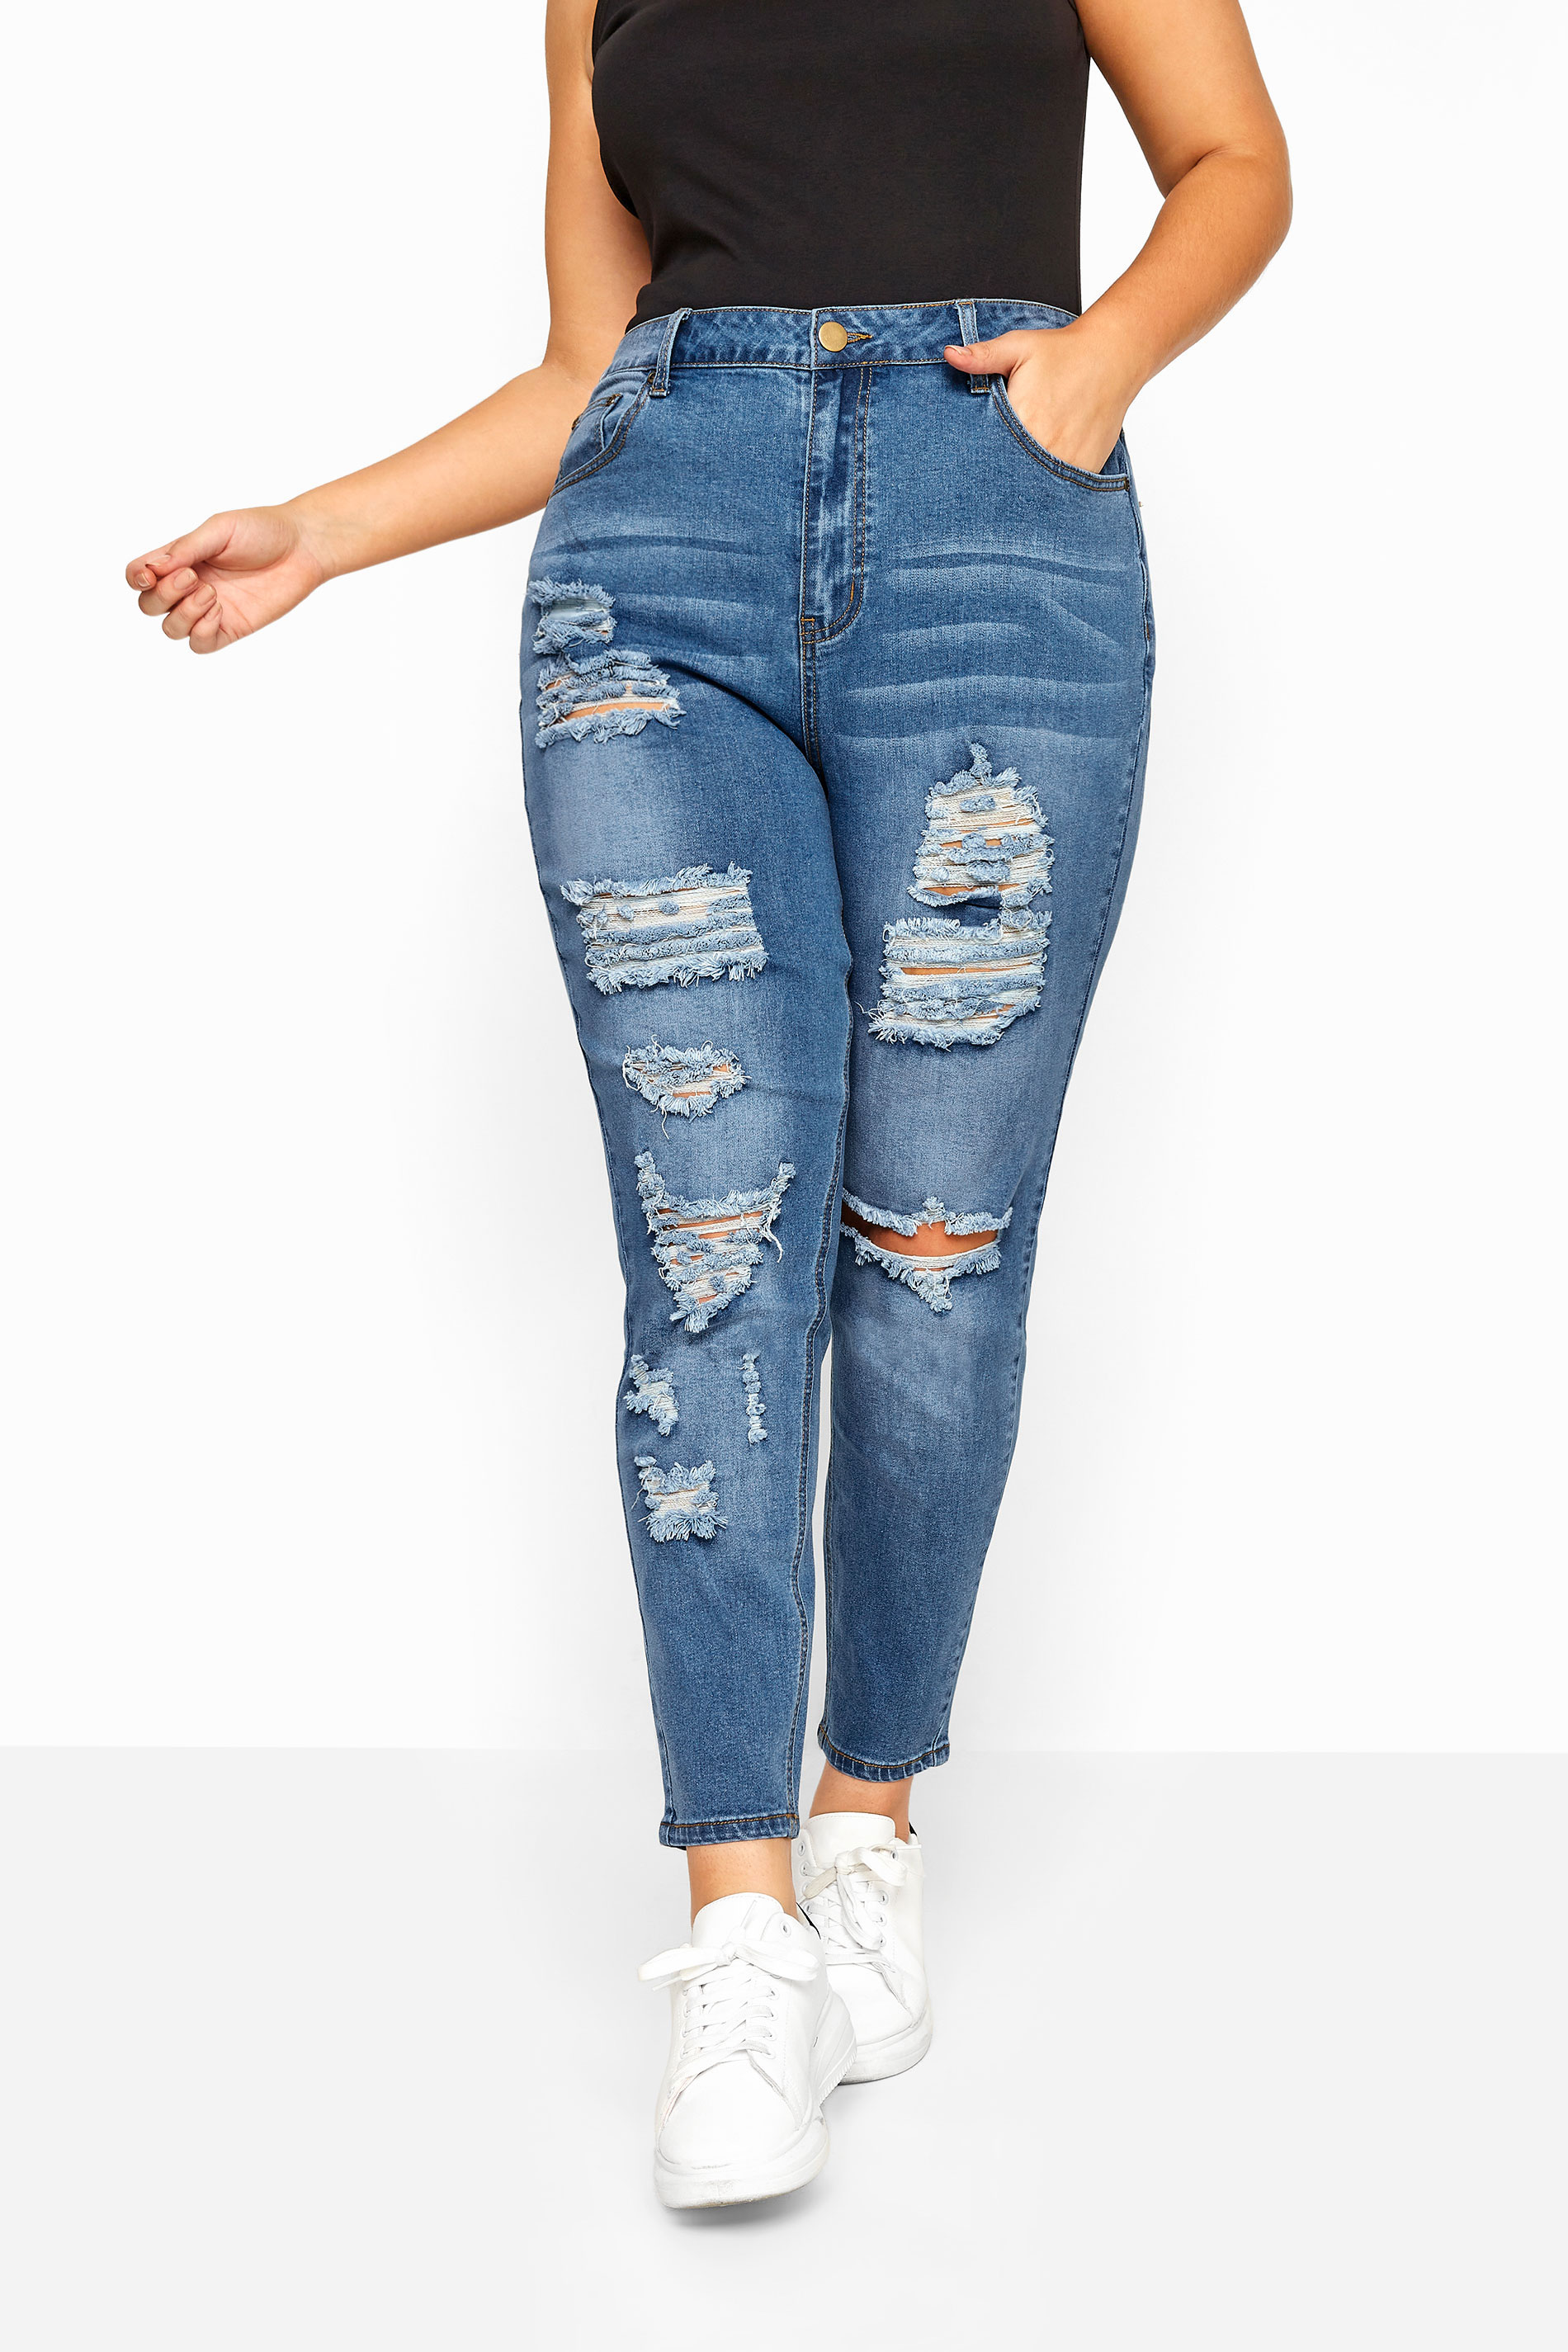 Womens Stretch Denim Jeans Curve Slim Pocket Plus Size 16 18 20 22 